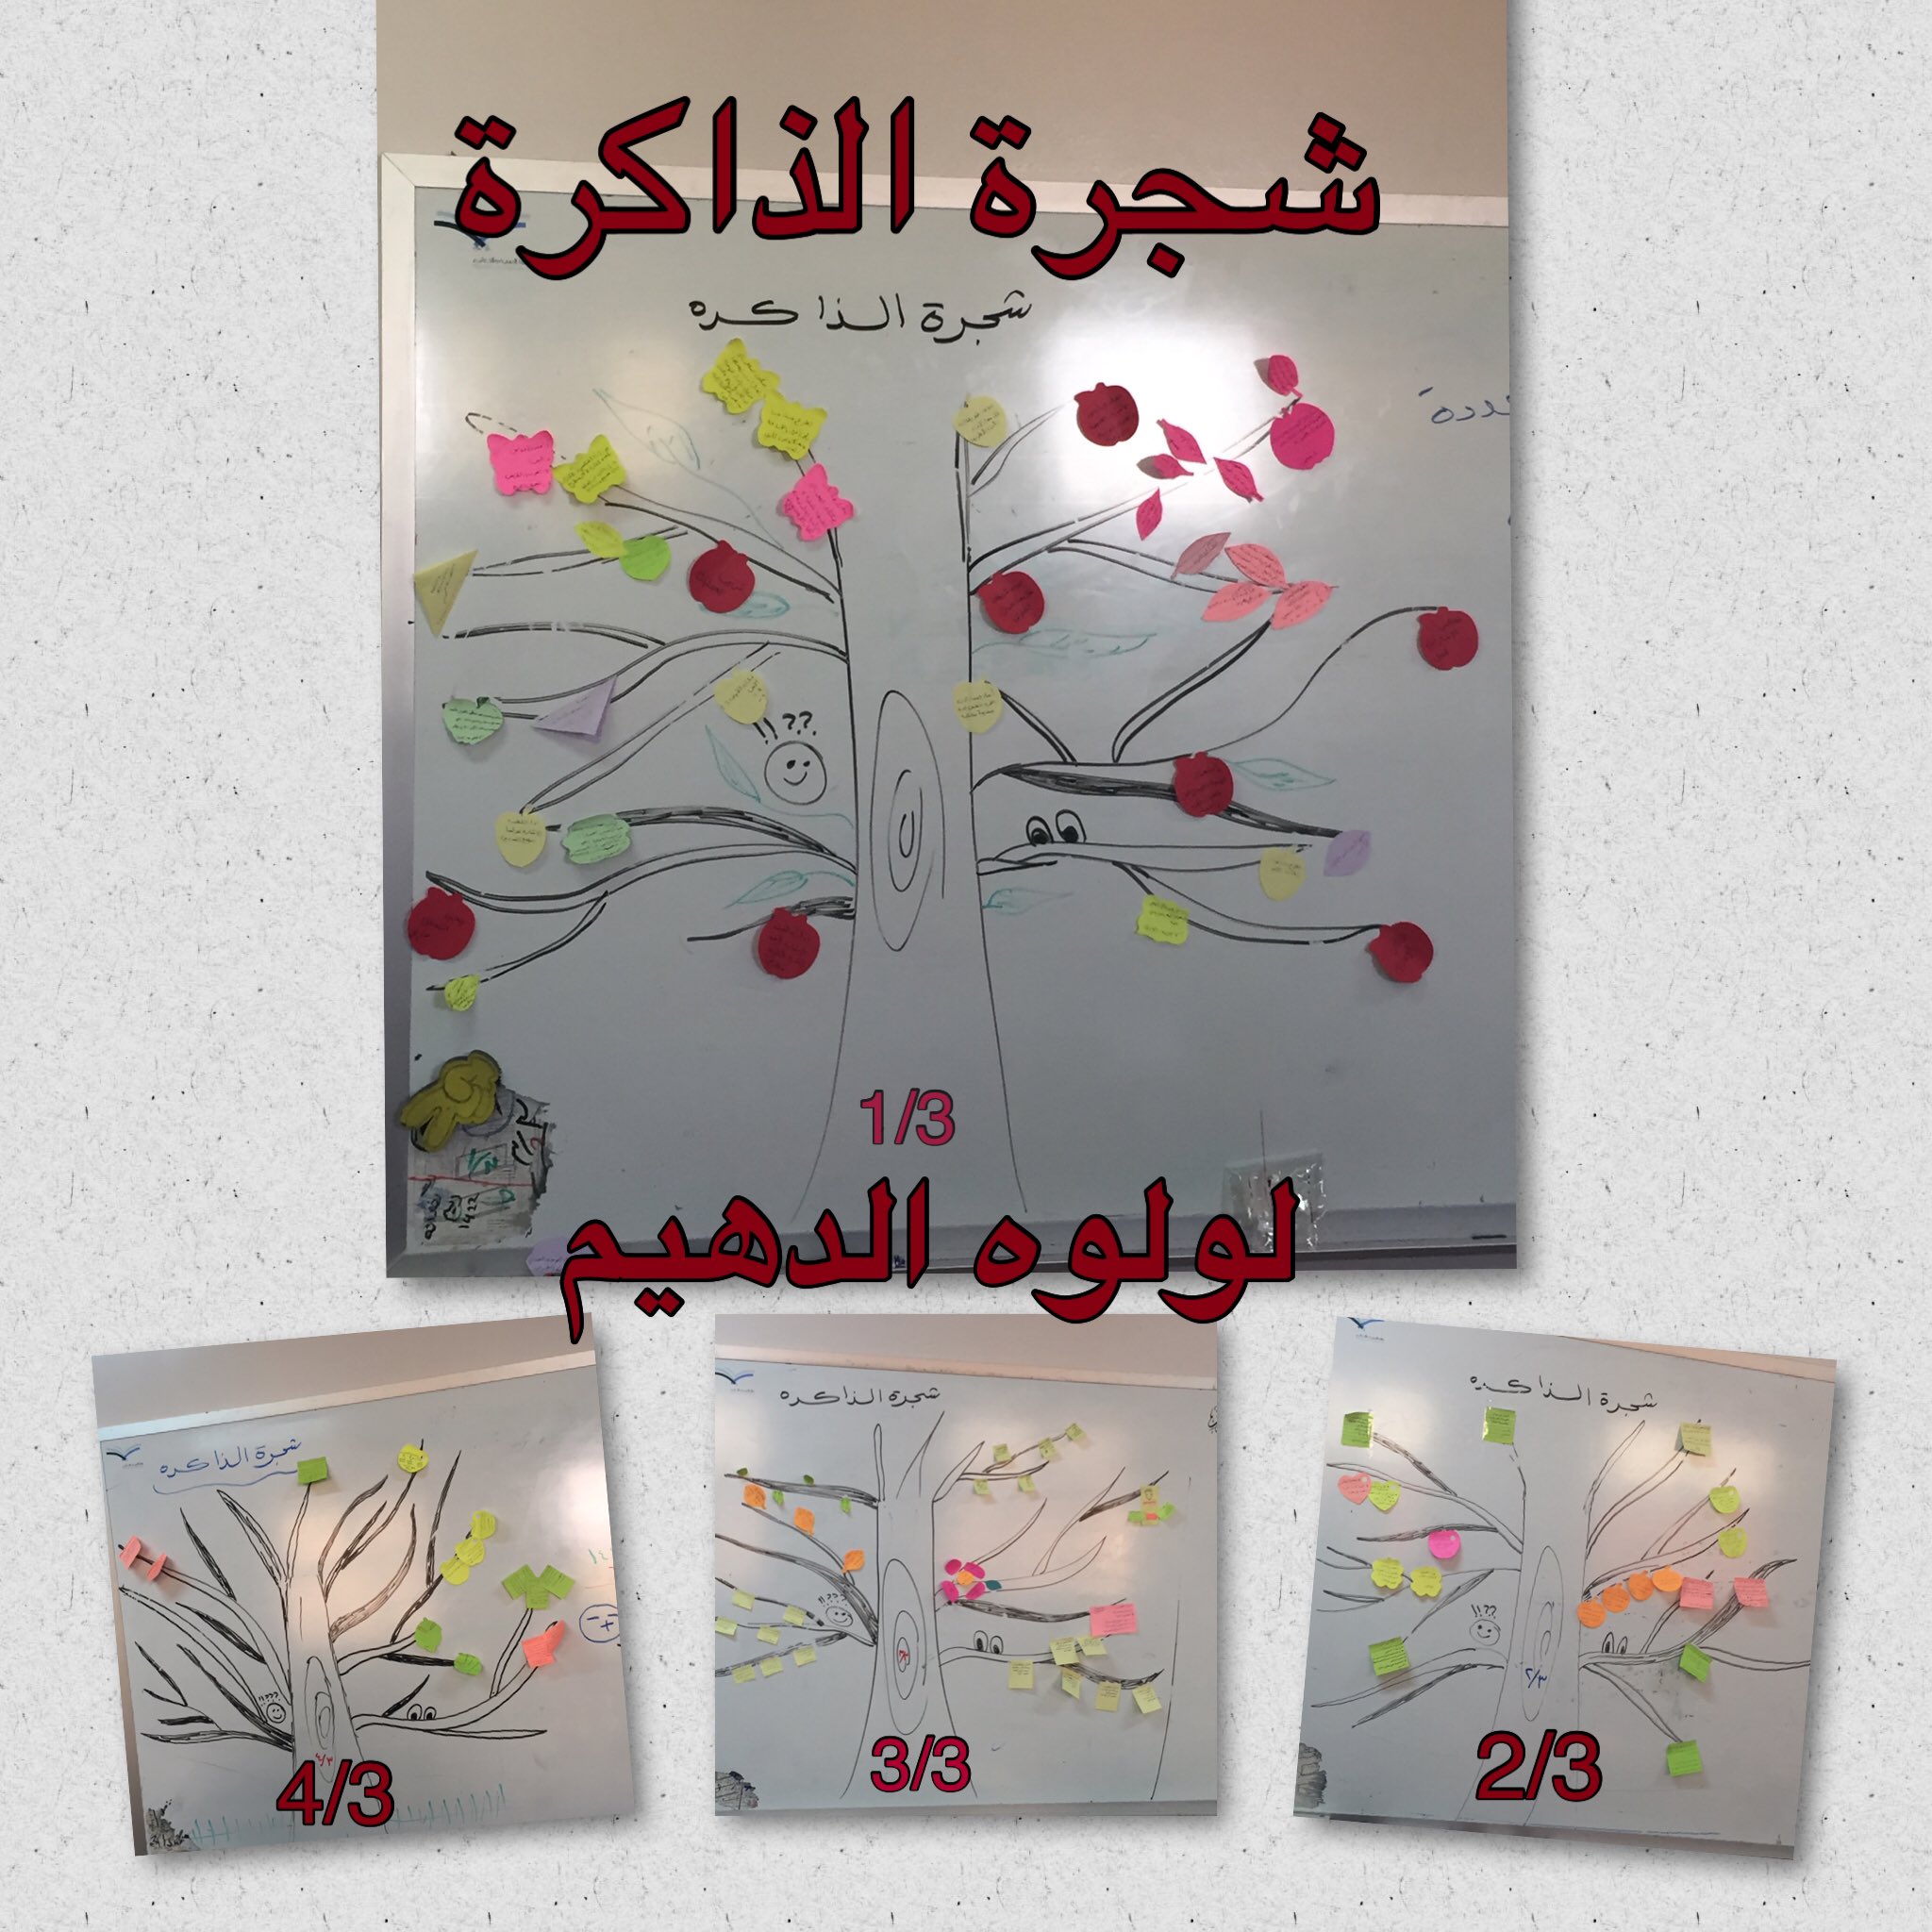 لولوه بنت علي الدهيم Auf Twitter تطبيق استراتيجية شجرة الذاكرة داخل الفصول الدراسية المجتمع التعليمي تعلم نشط شجرة الذاكرة